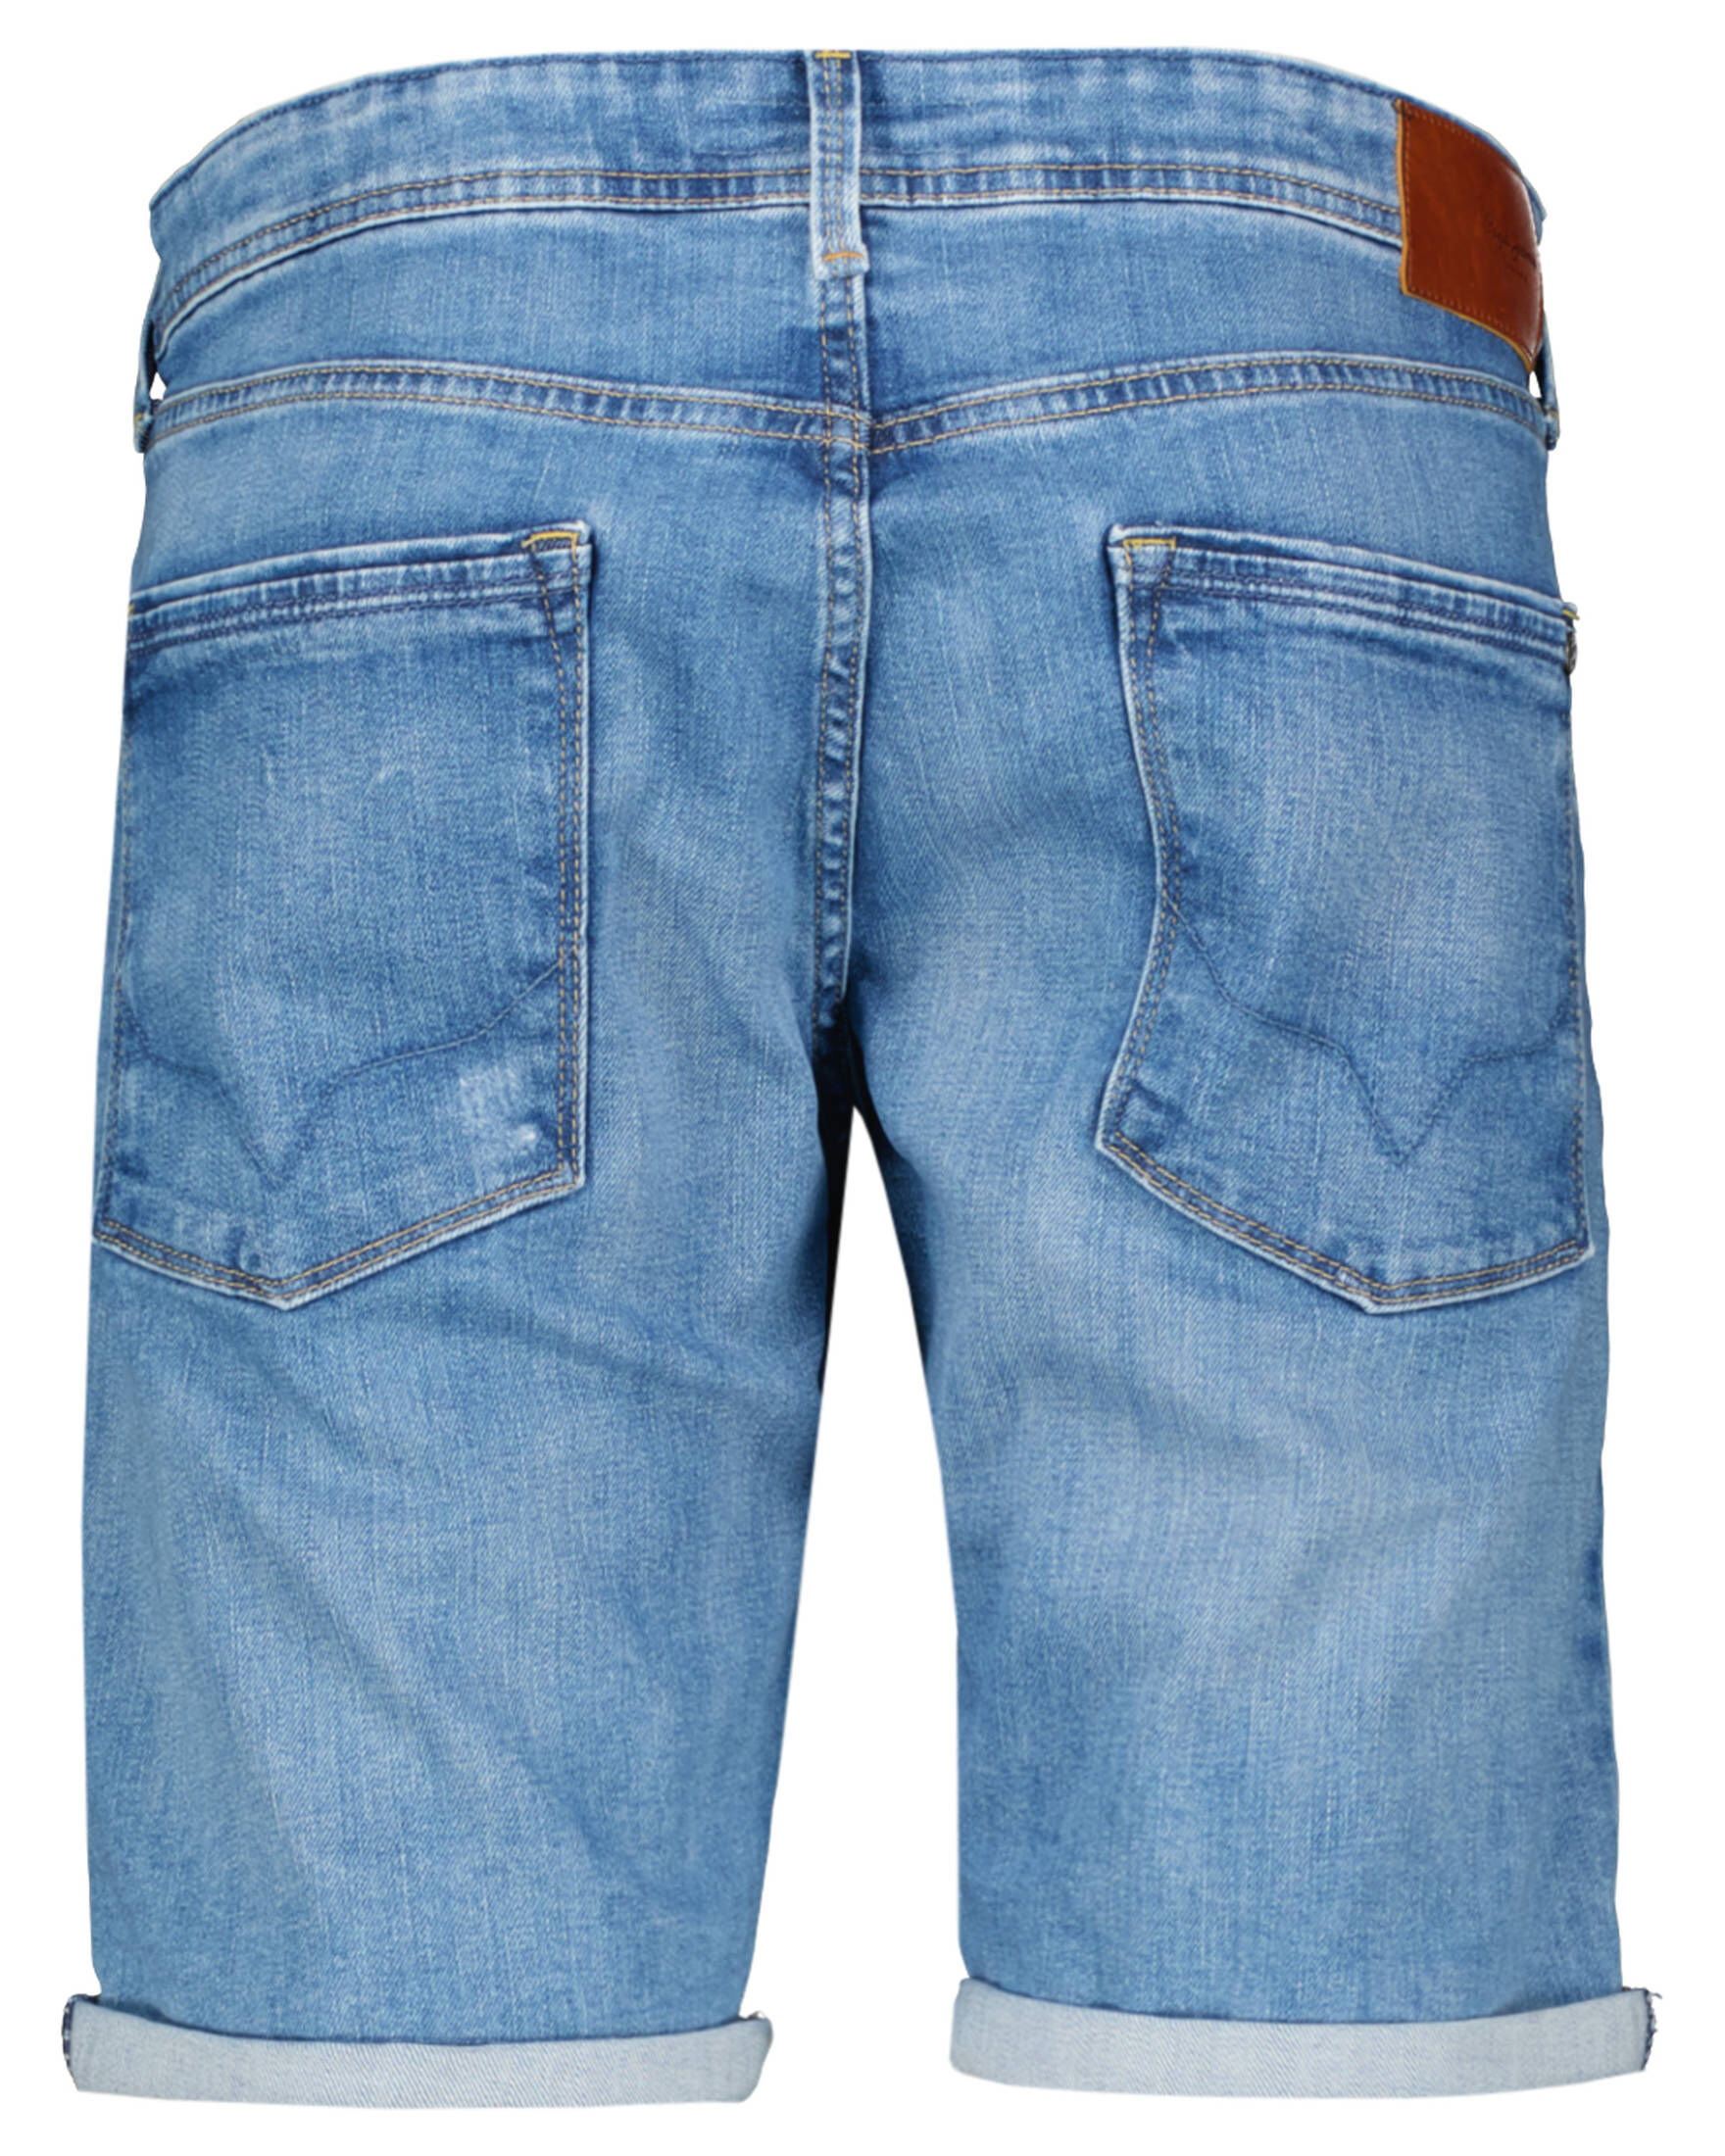 Pepe Jeans Jeansbermudas aus Coloured Denim Herren Hose Größe 30 31 